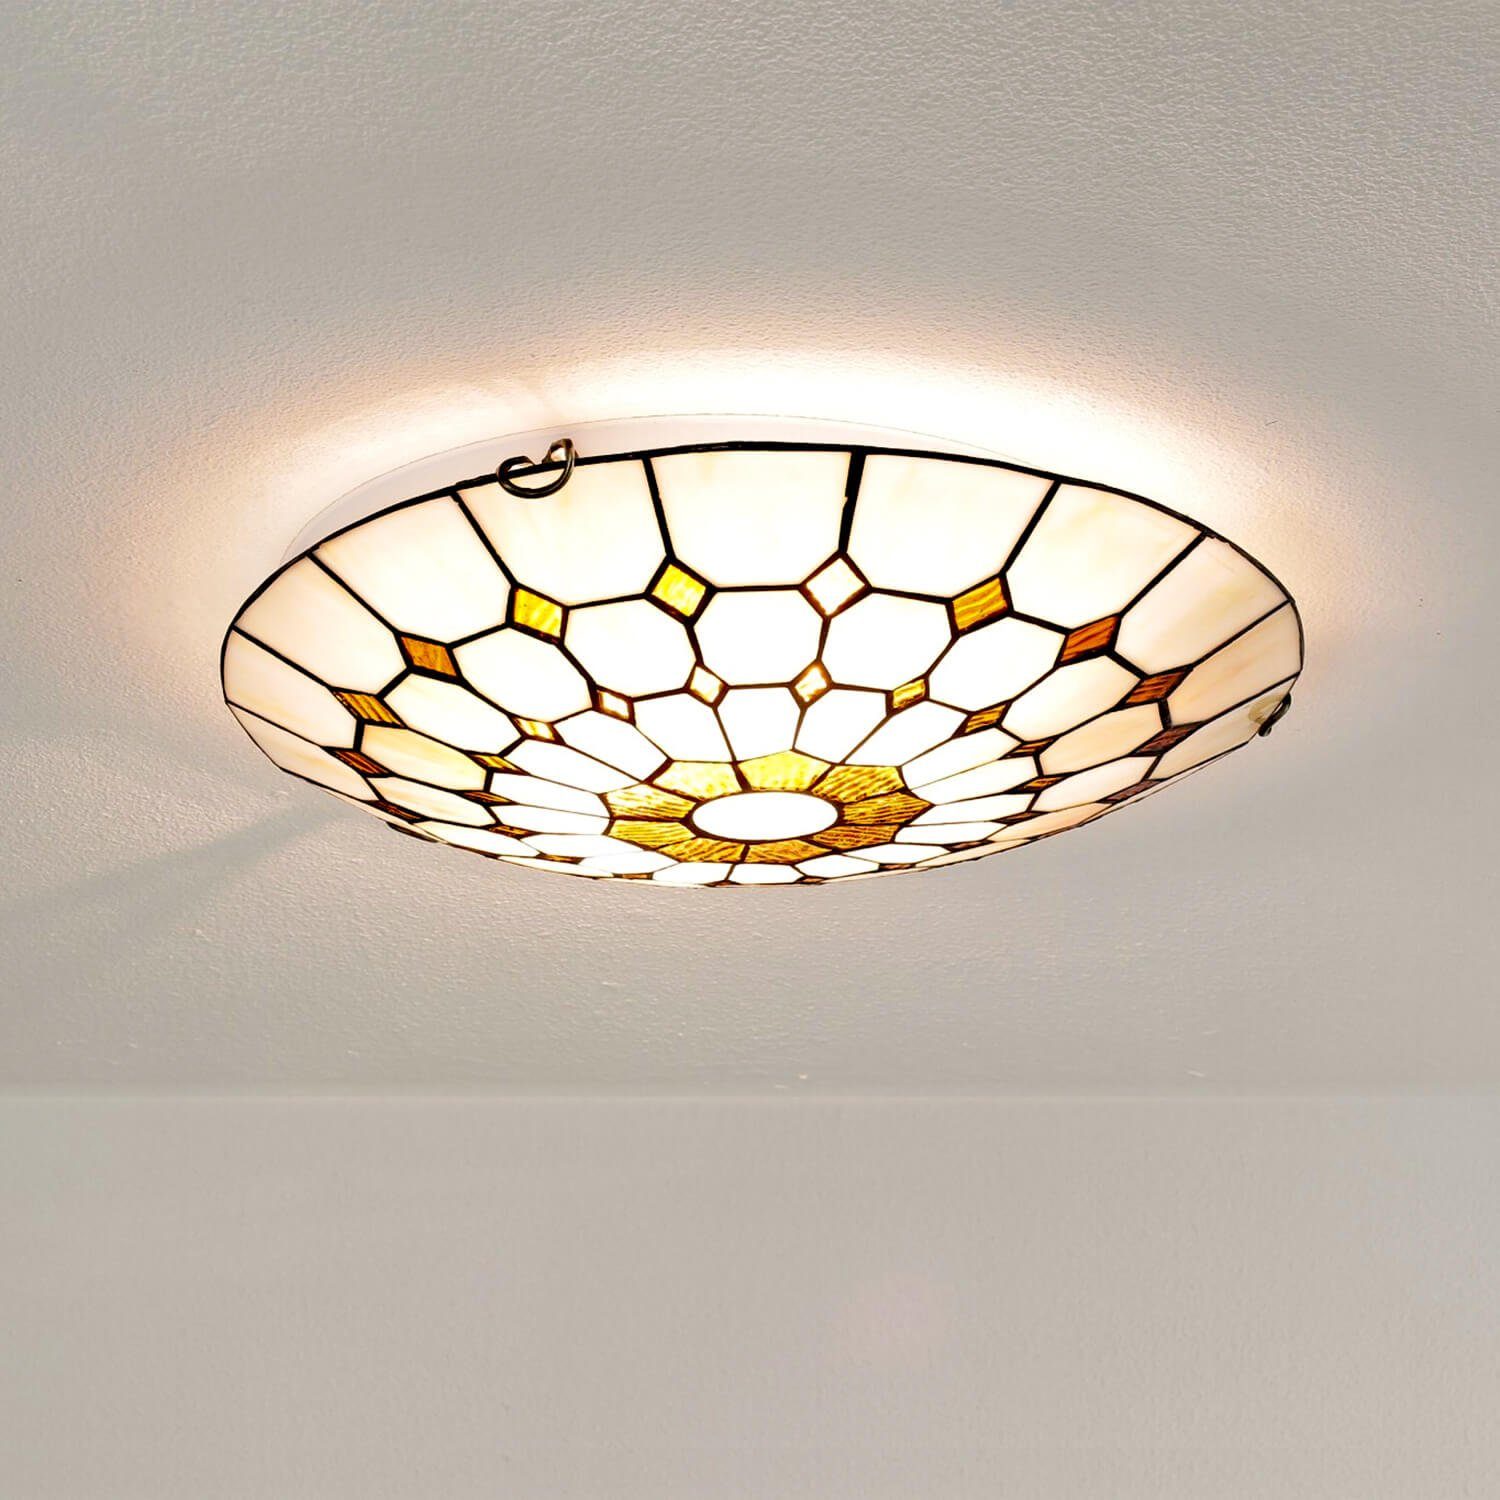 LED Decken Leuchte Wohn Zimmer Landhaus Stil Lampe rund Alabaster Glas Optik 